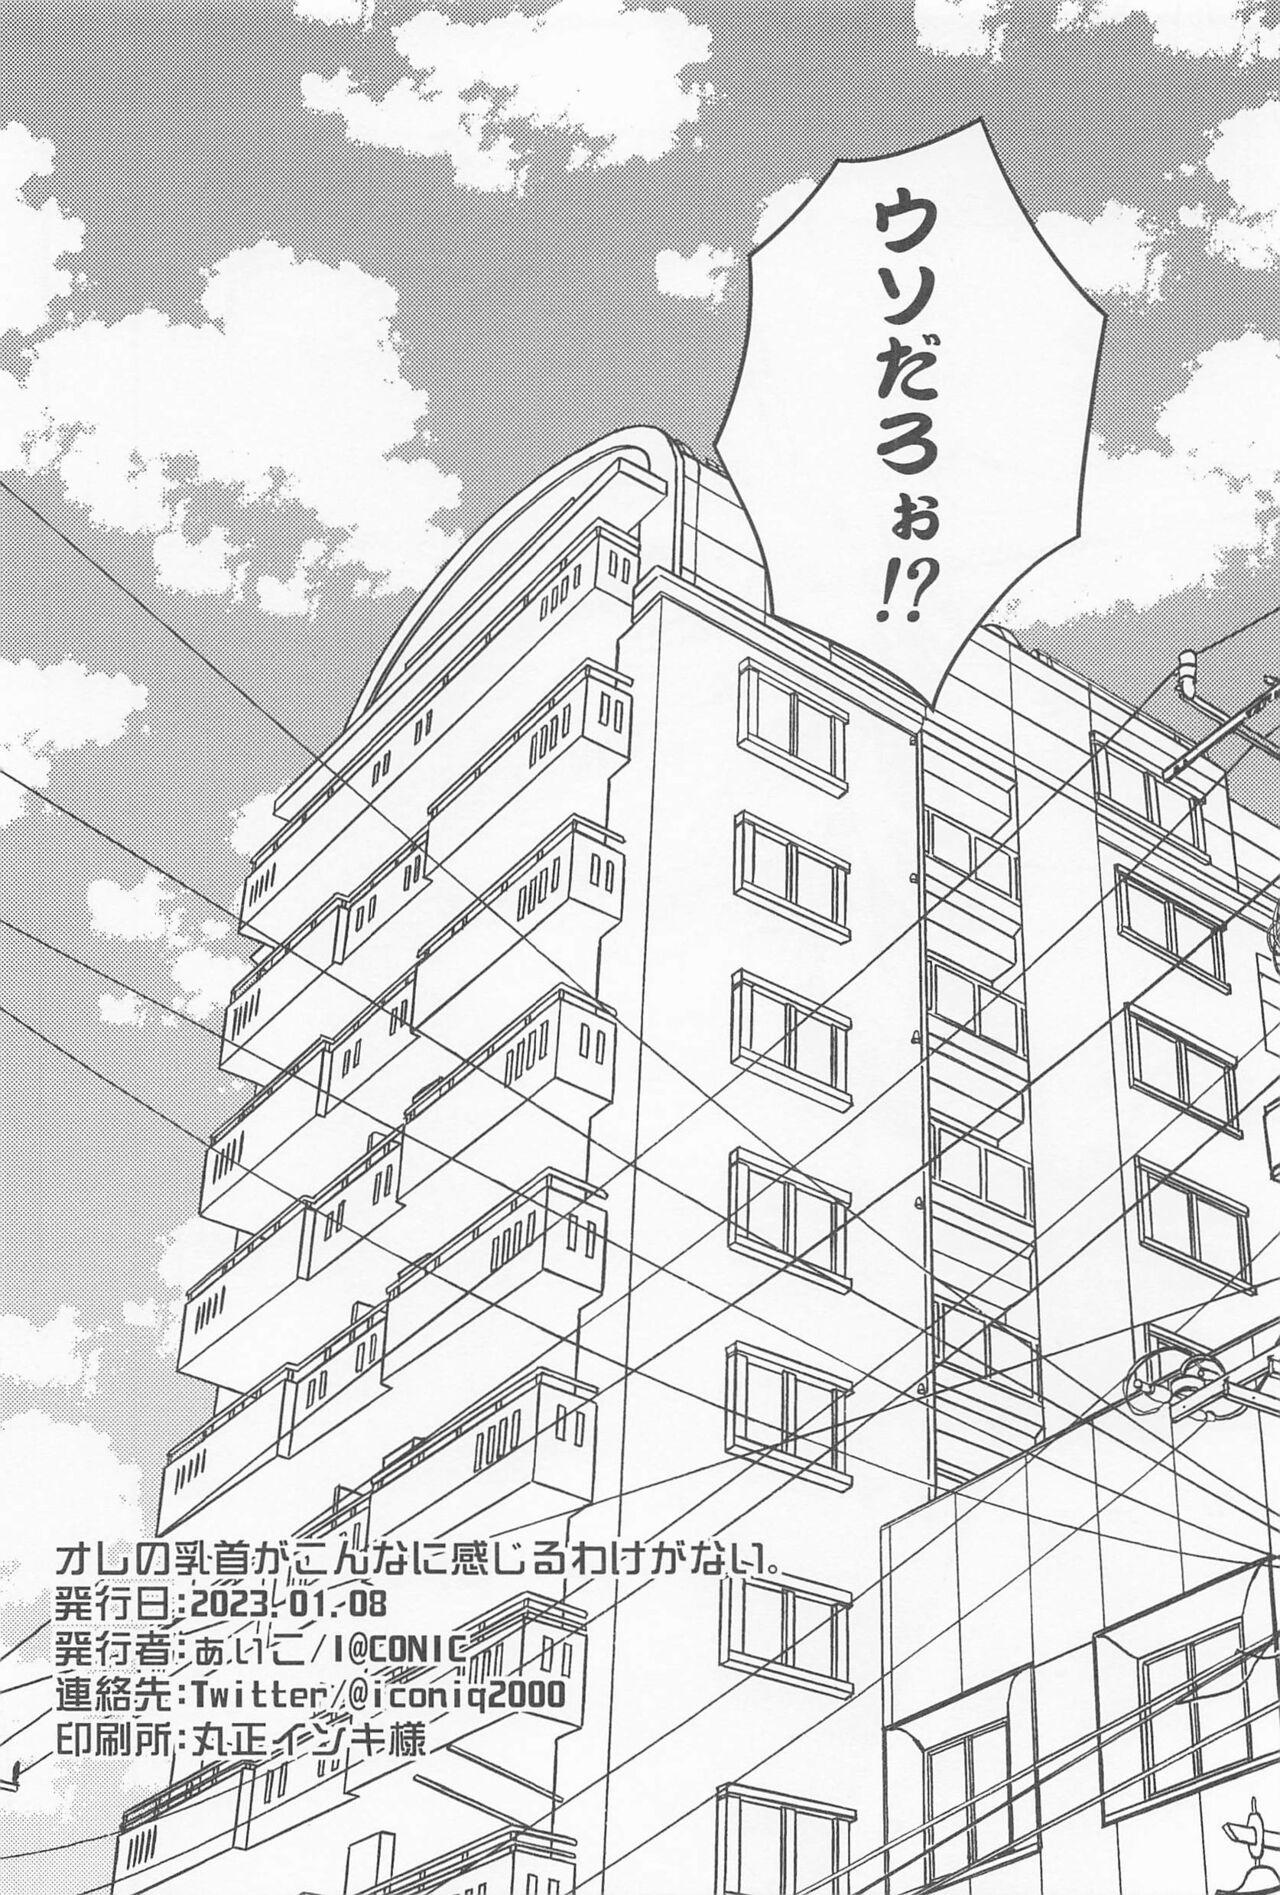 Marido orenochikubigakonnanikanjiruwakeganai。 - Tokyo revengers Chica - Page 17